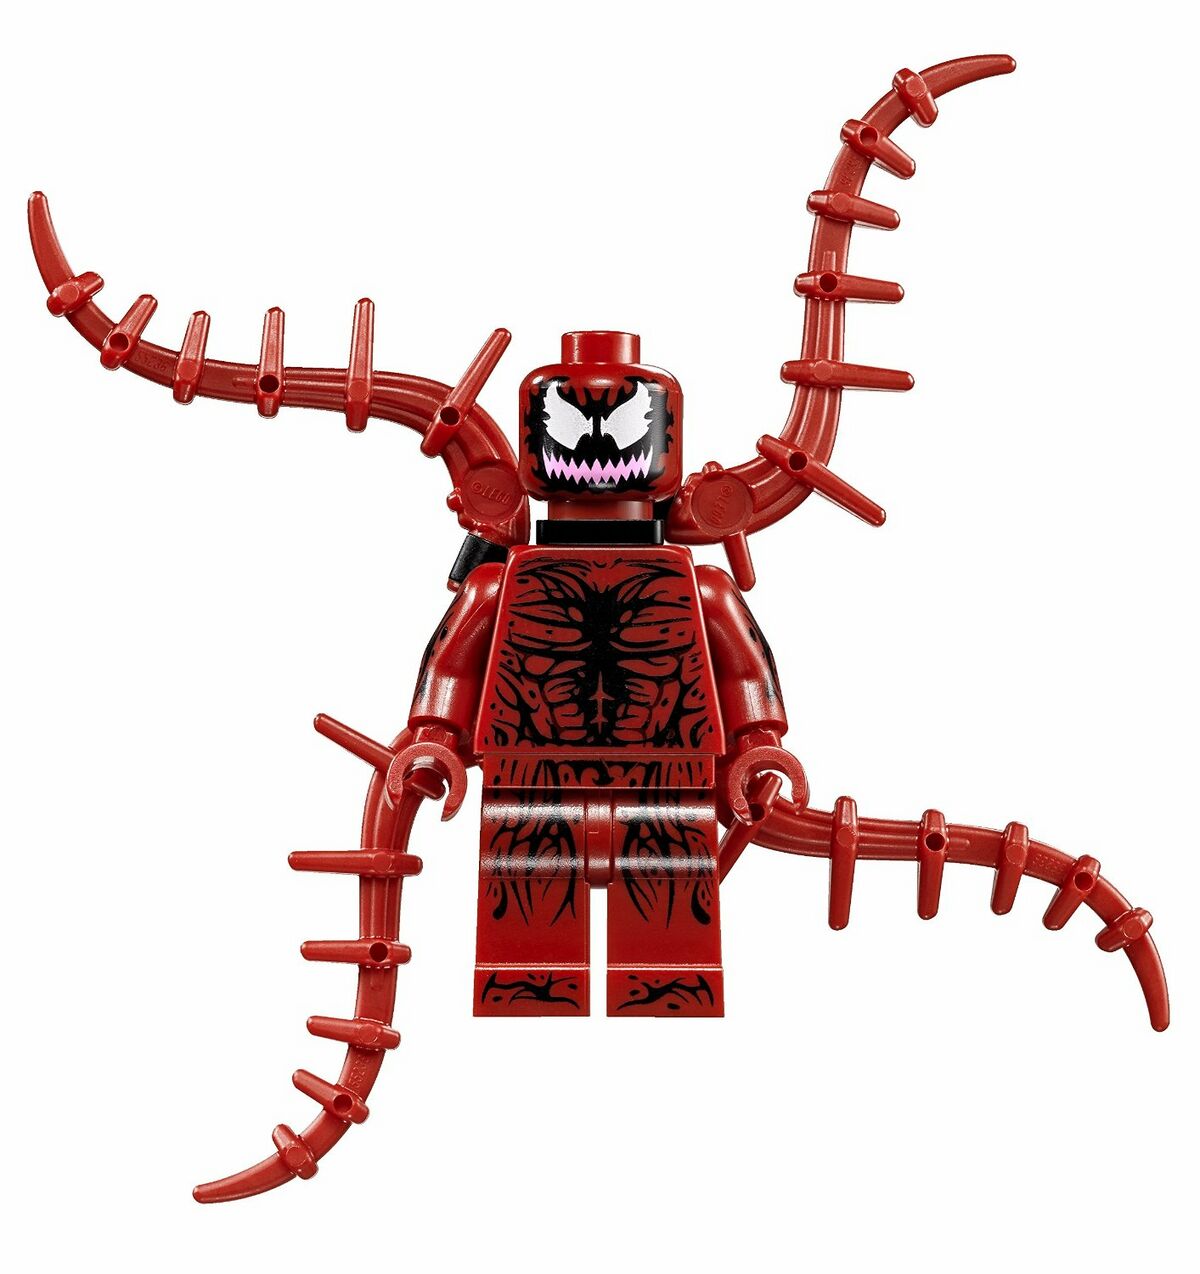 Spider-Man, Lego Spider-Man Wiki